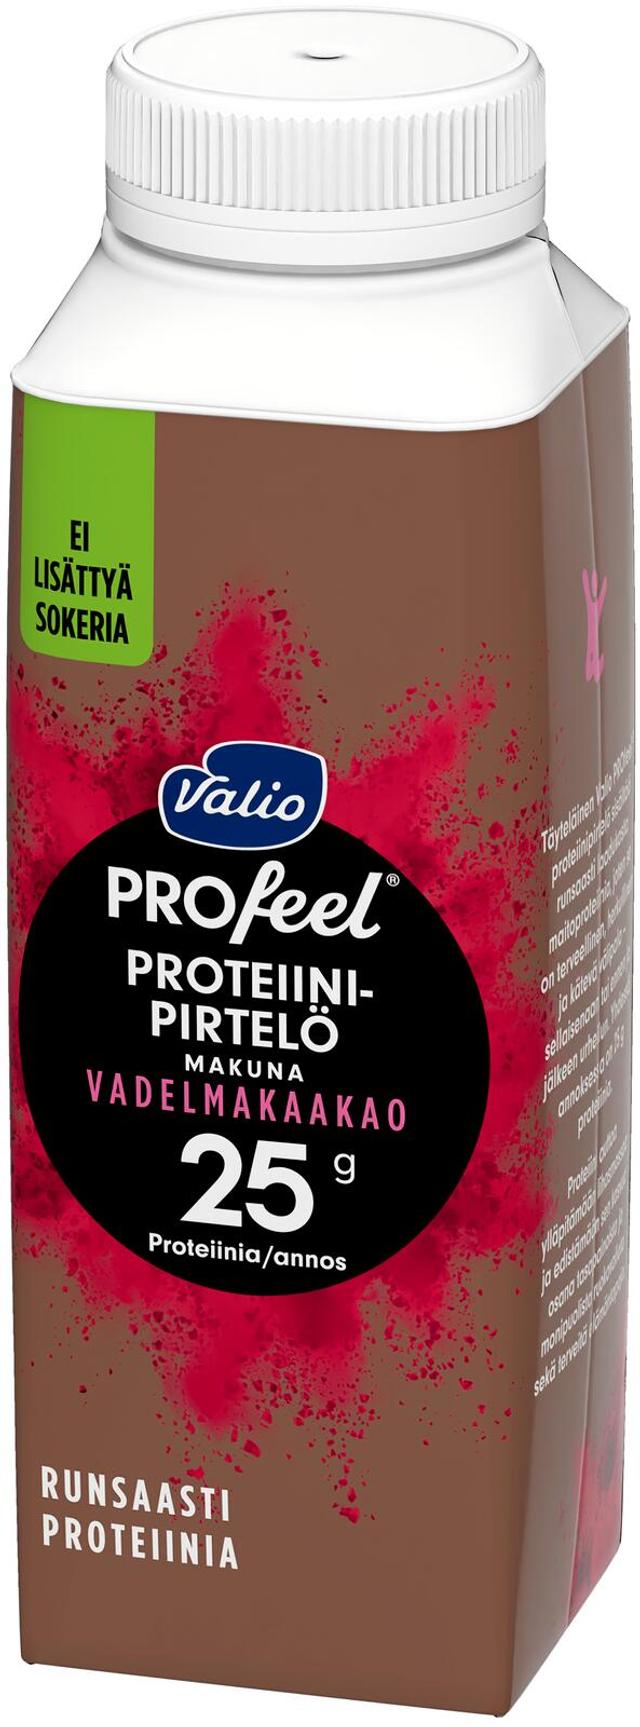 Valio PROfeel® proteiinipirtelö 2,5 dl vadelmakaakao laktoositon